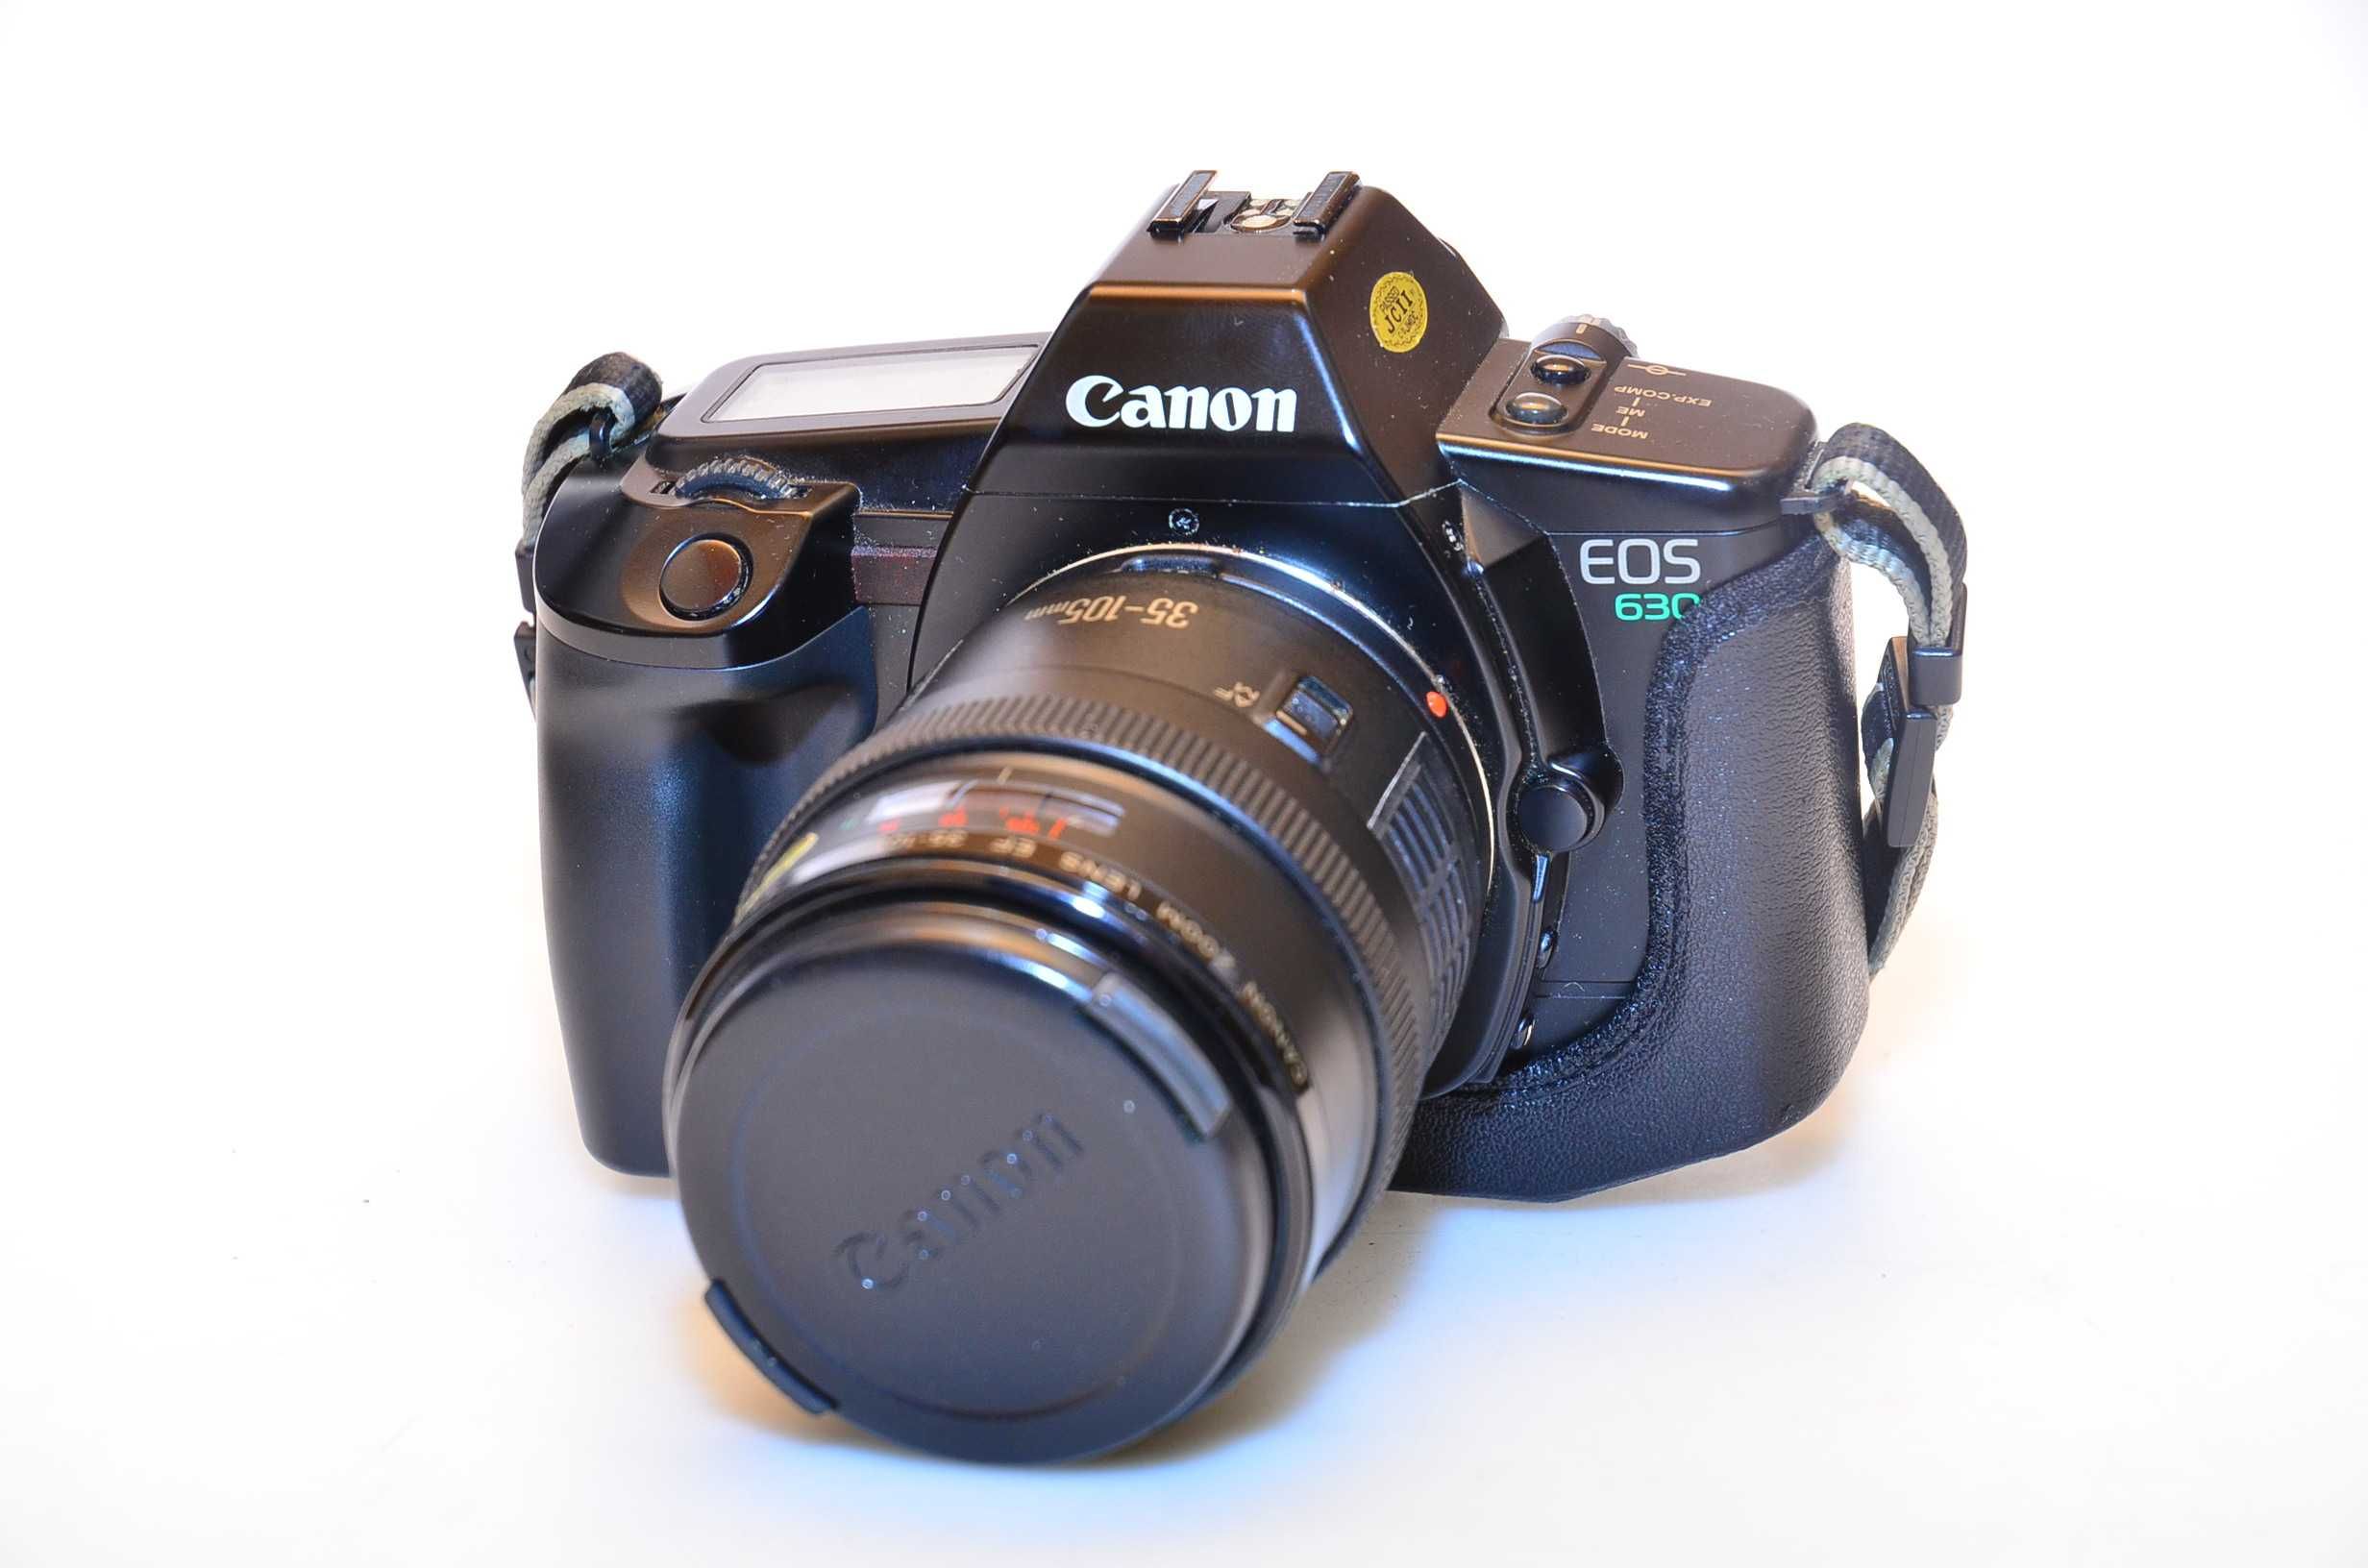 Aparat Canon EOS 630 + obiektyw 35-105 f3,5-4,5